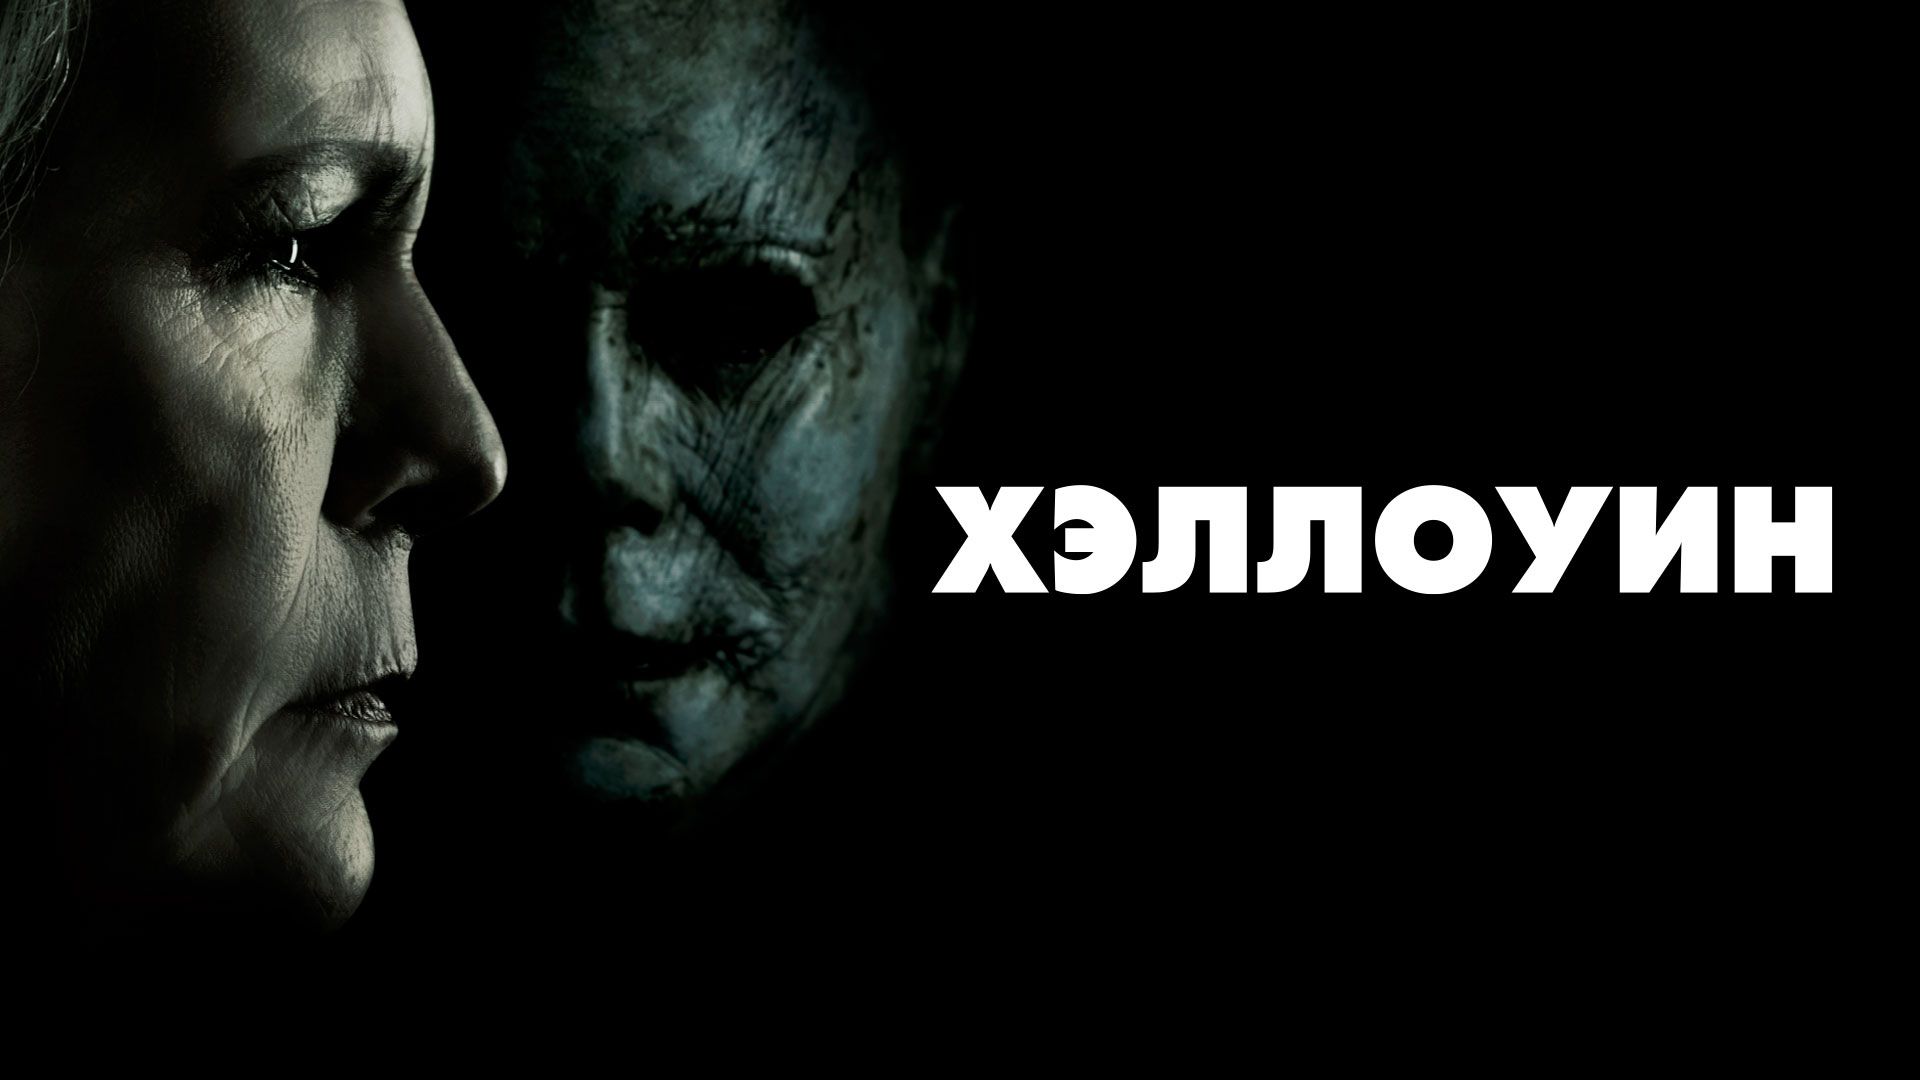 Фильм Хэллоуин () смотреть онлайн бесплатно на русском языке в хорошем HD качестве